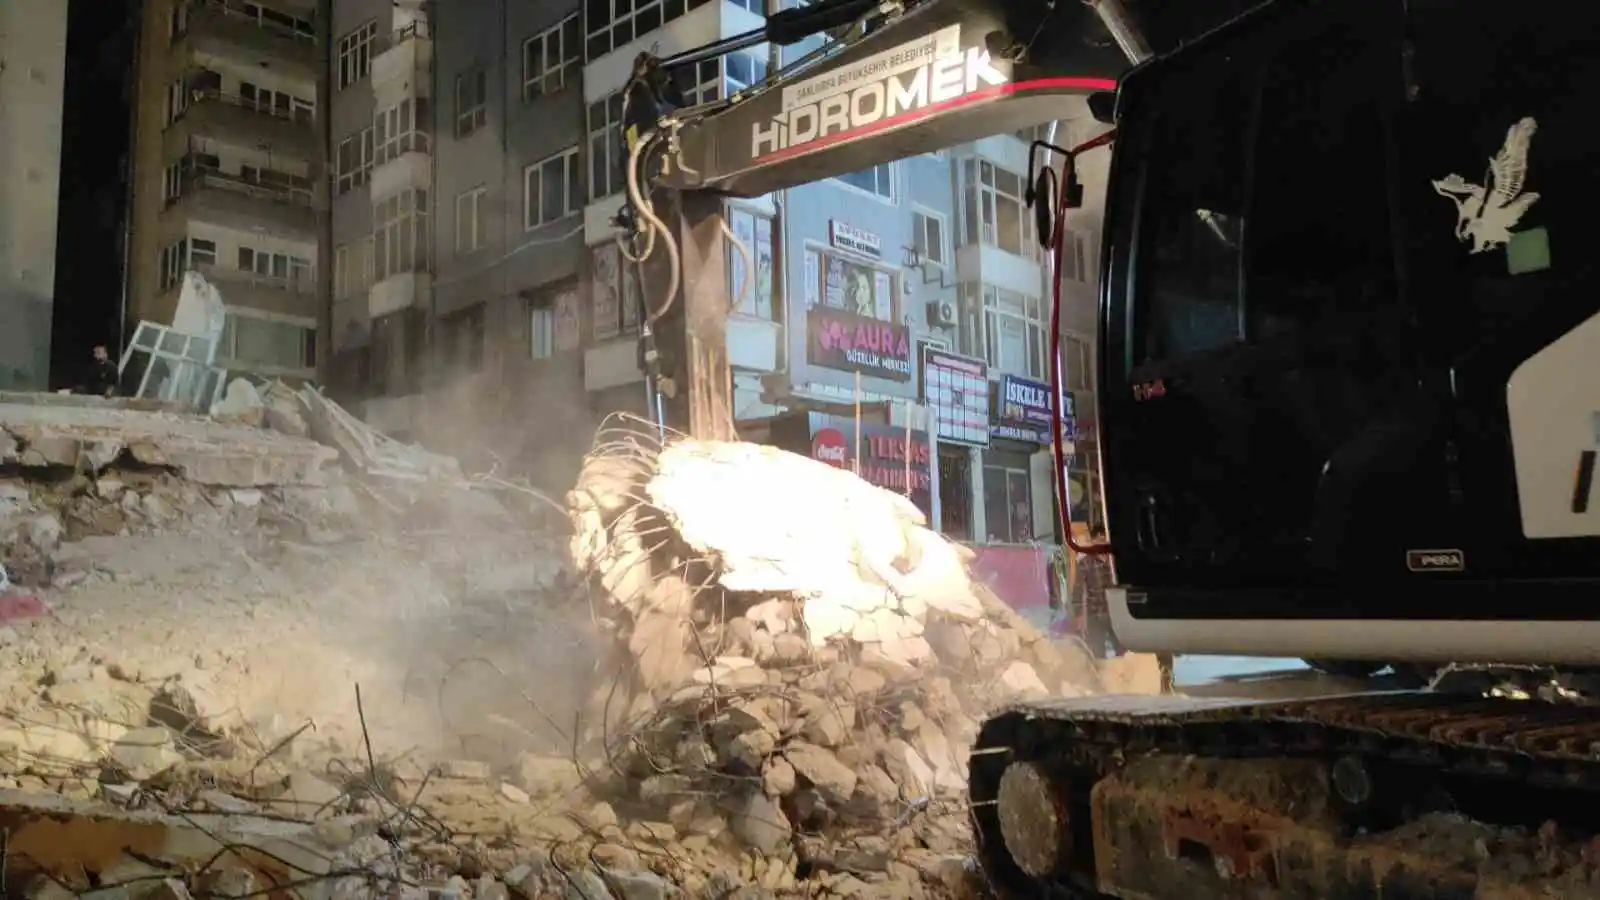 Şanlıurfa’da çöken binada enkaz kaldırma çalışmaları sürüyor
